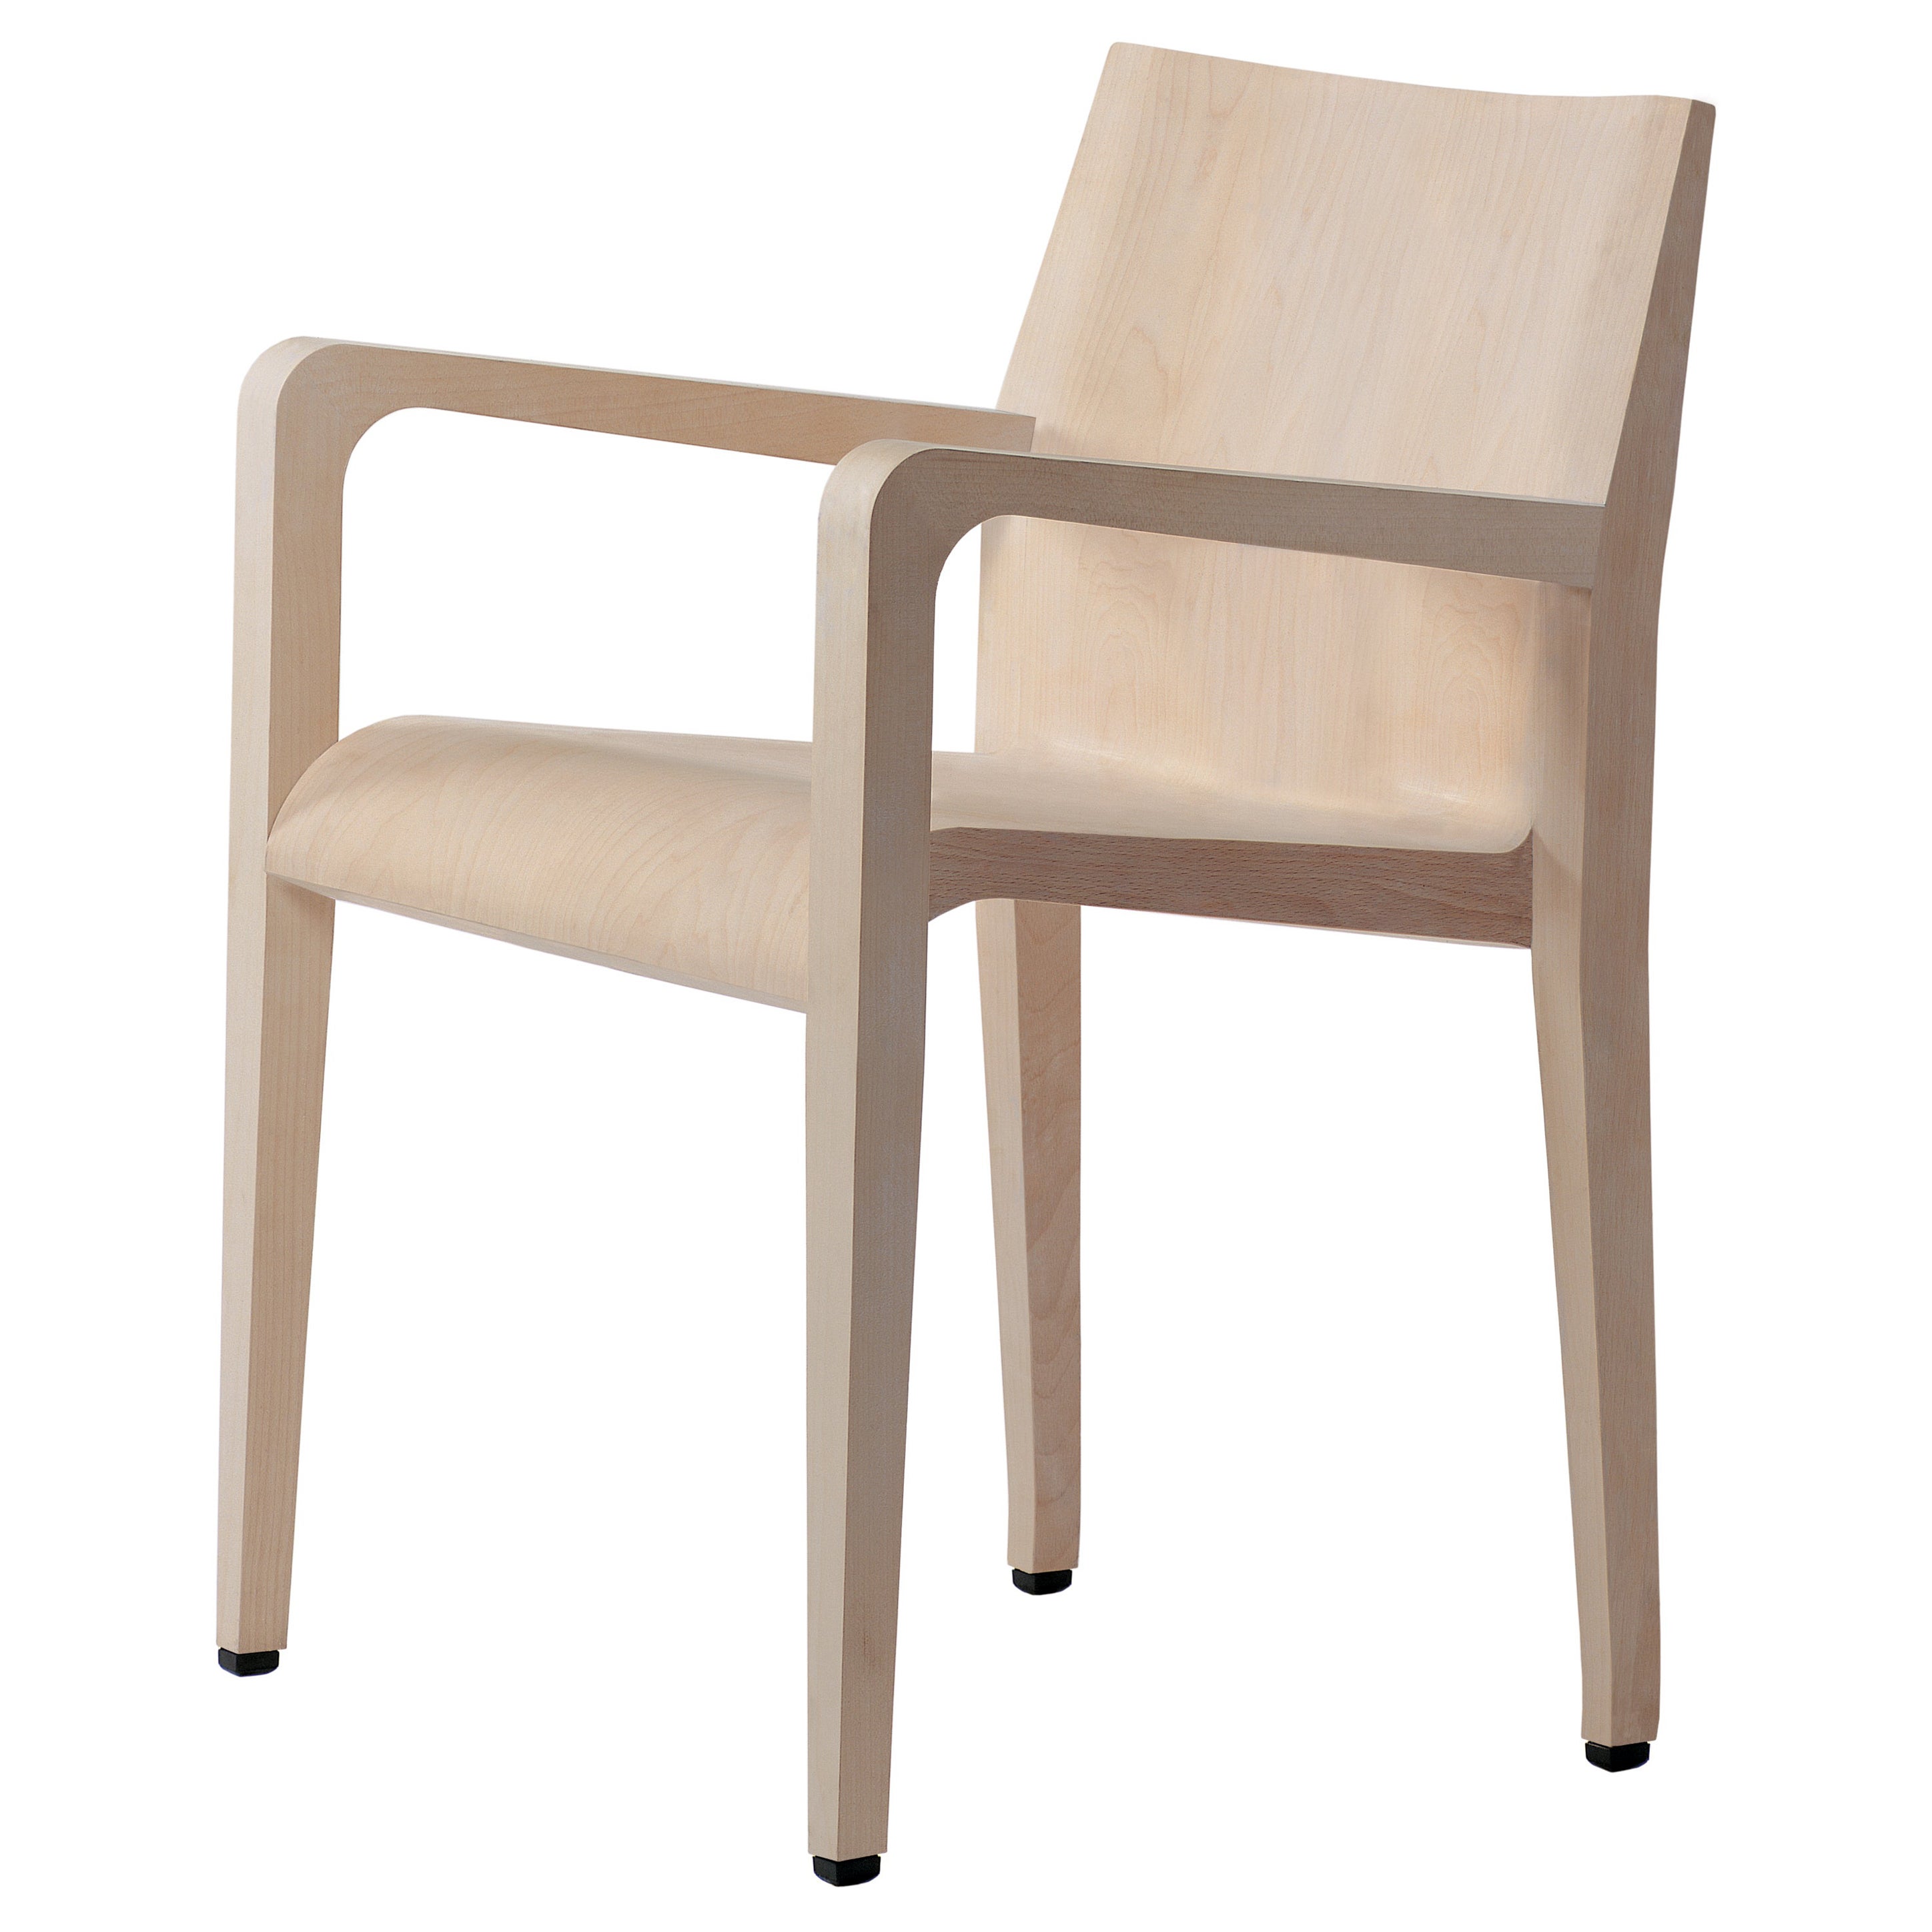 Alias 304 Laleggera Armrest Chair in Whitened Oak Wood by Riccardo Blumer For Sale